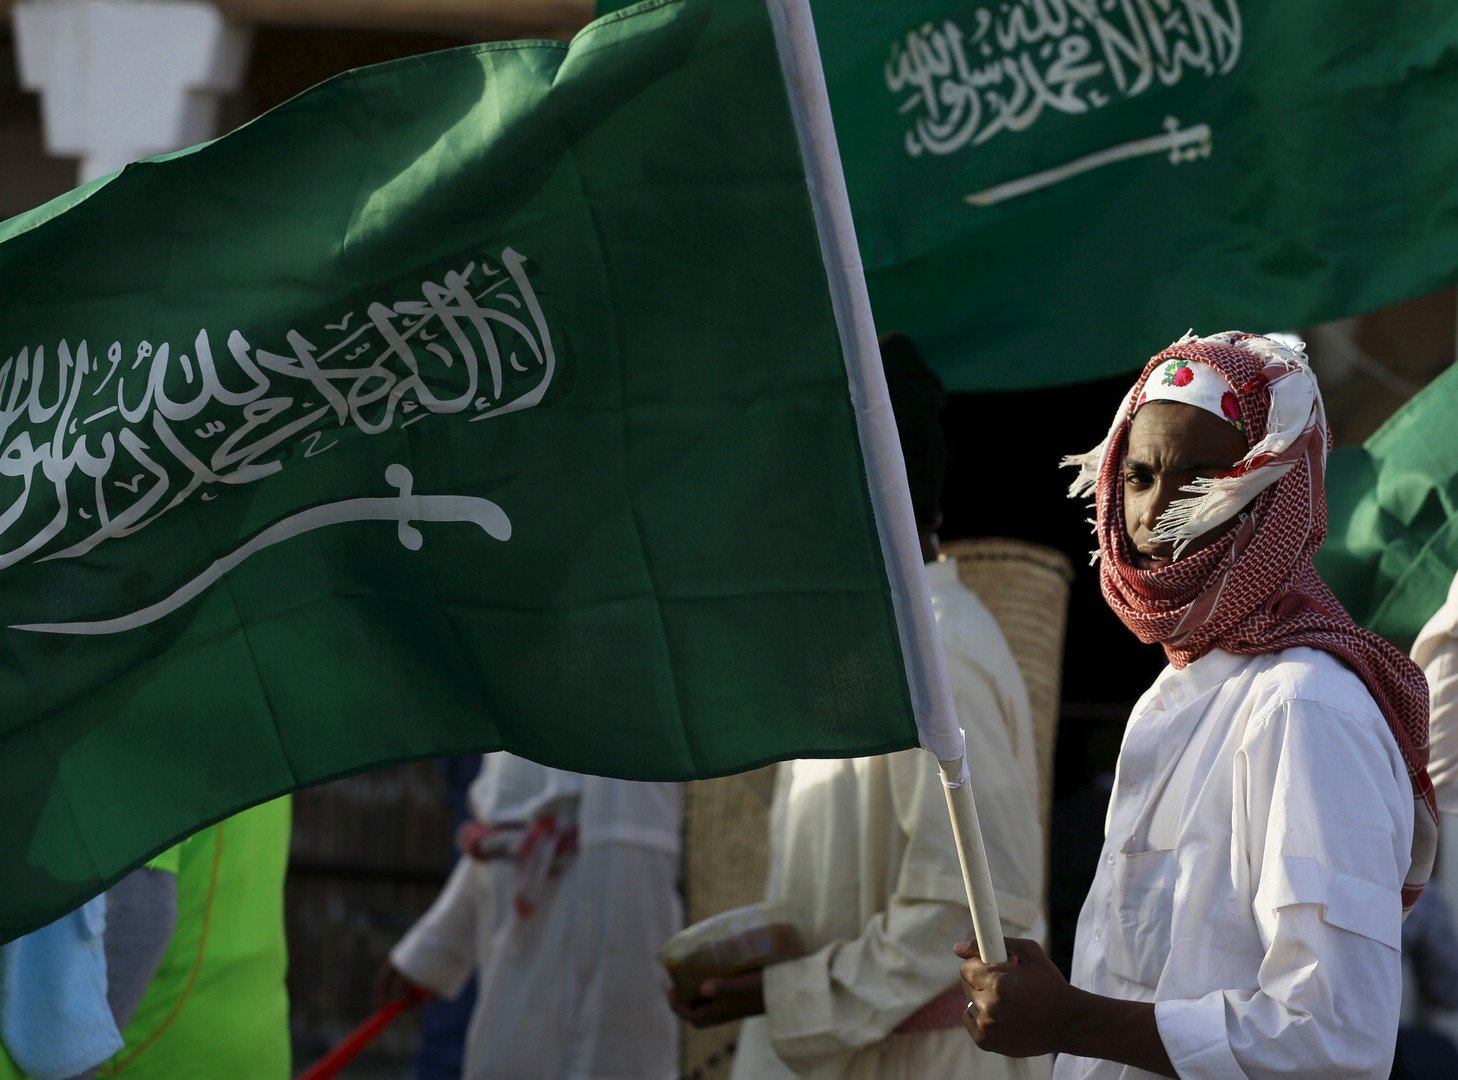 السعودية: إسرائيل وإيران تثيران الفتن ولا ثارات تاريخية بين الفلسطينيين واليهود